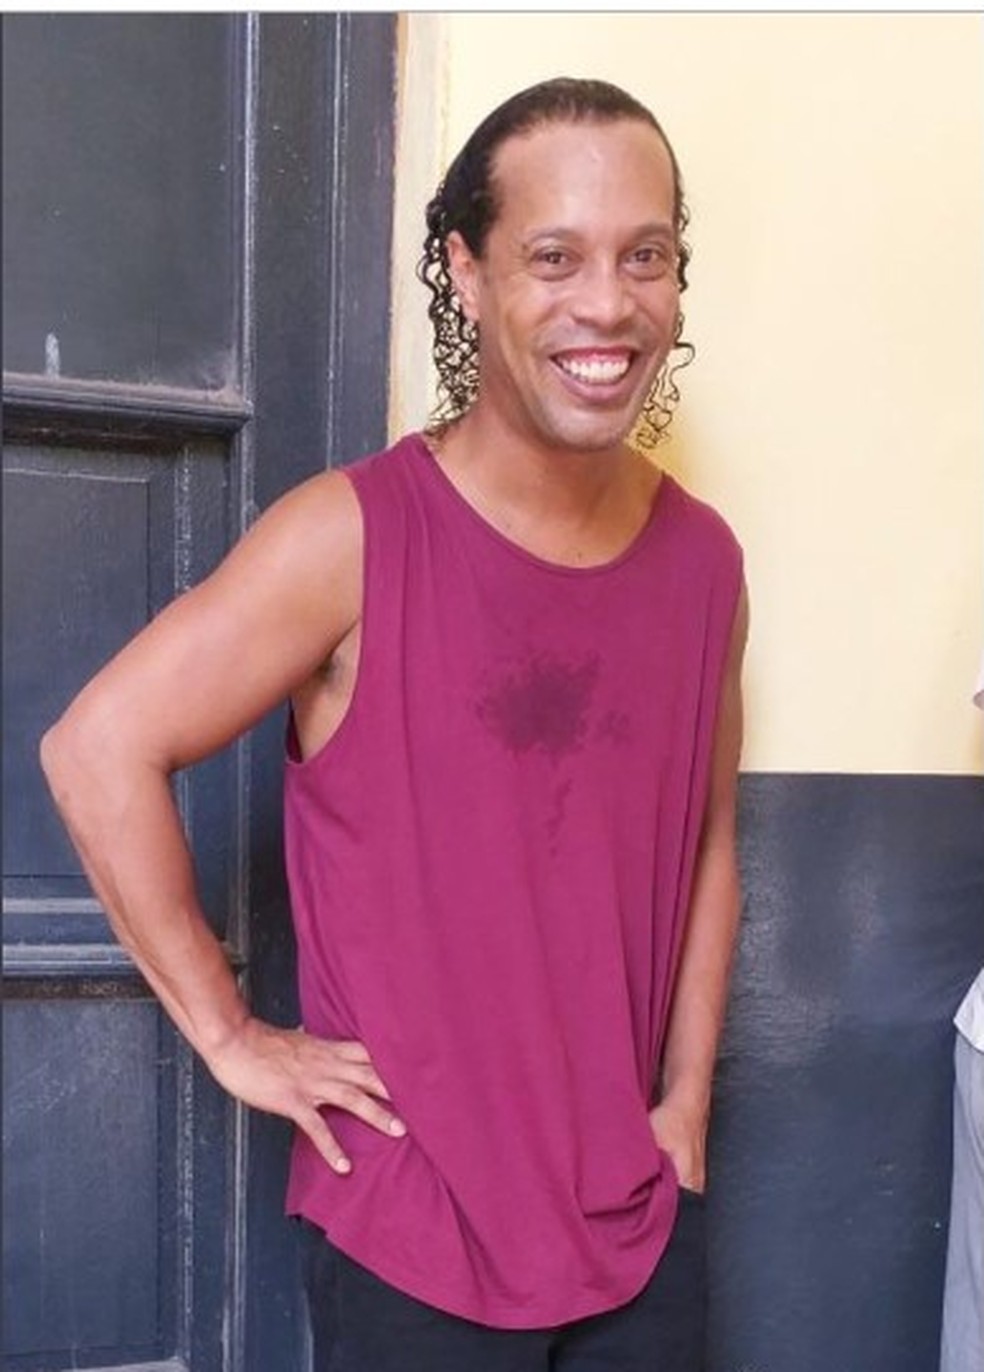 Imagem divulgada em rede social mostra Ronaldinho Gaúcho em penitenciária em Assunção, no Paraguai, em 9 de março de 2020 — Foto: Reprodução/Repollera